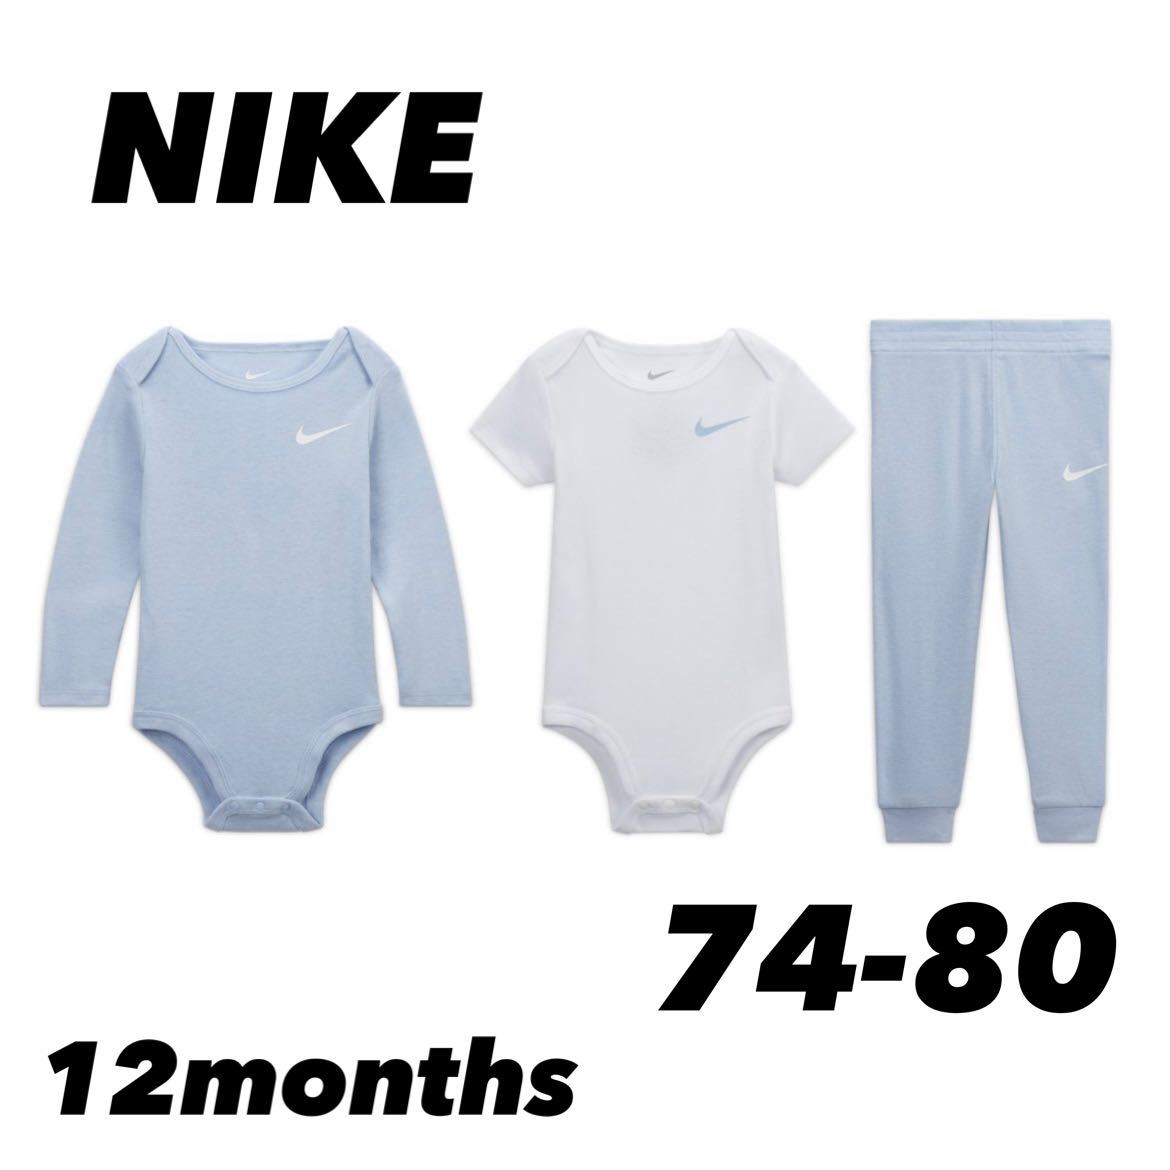  новый товар Nike baby детский комбинезон брюки из трех частей выставить размер 80 соответствует почтовая доставка бесплатная доставка NIKE короткий рукав длинный рукав длинные брюки 